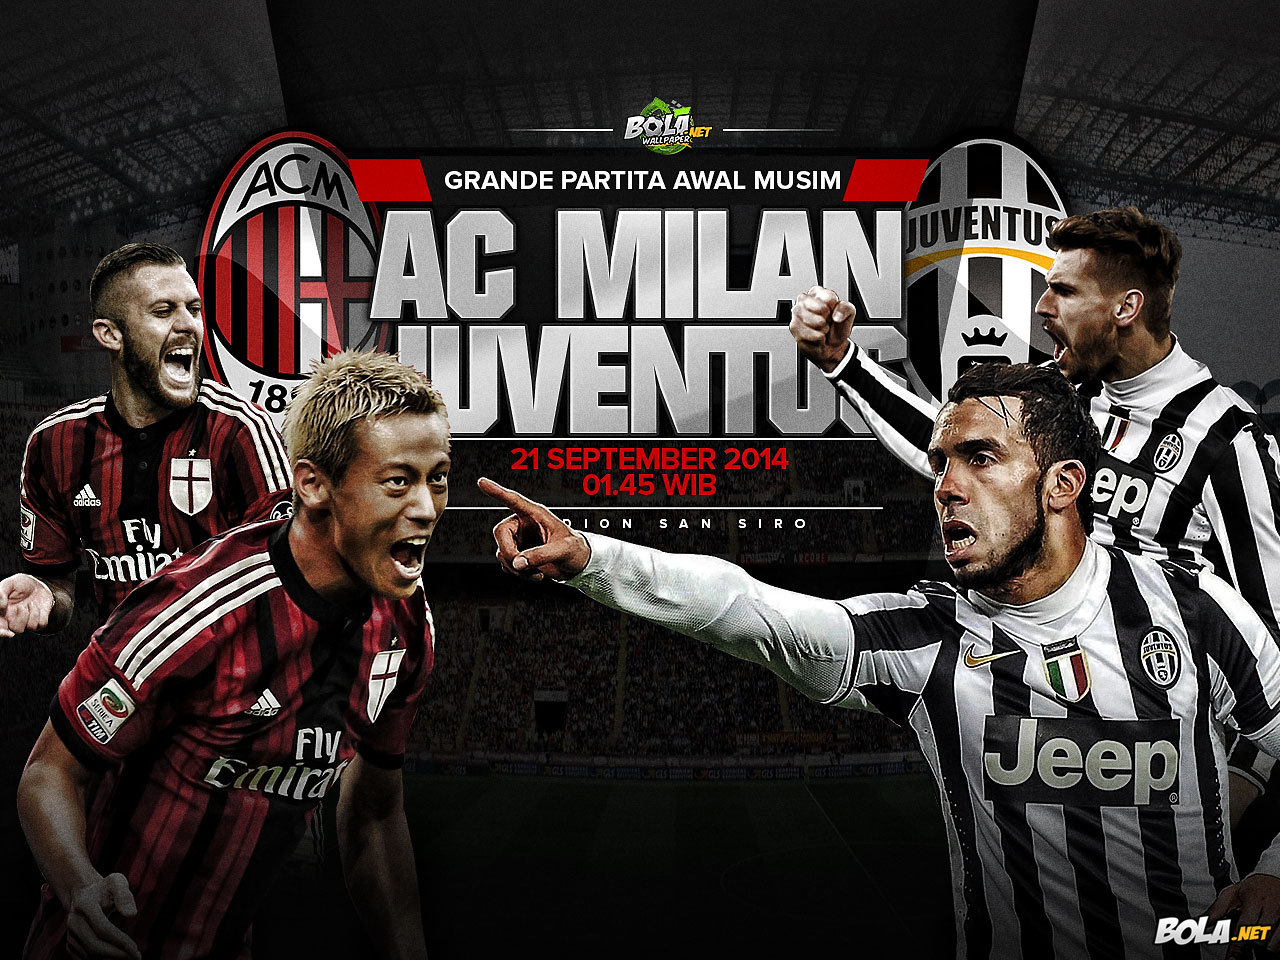 Download Wallpaper AC Milan Vs Juventus Bolanet